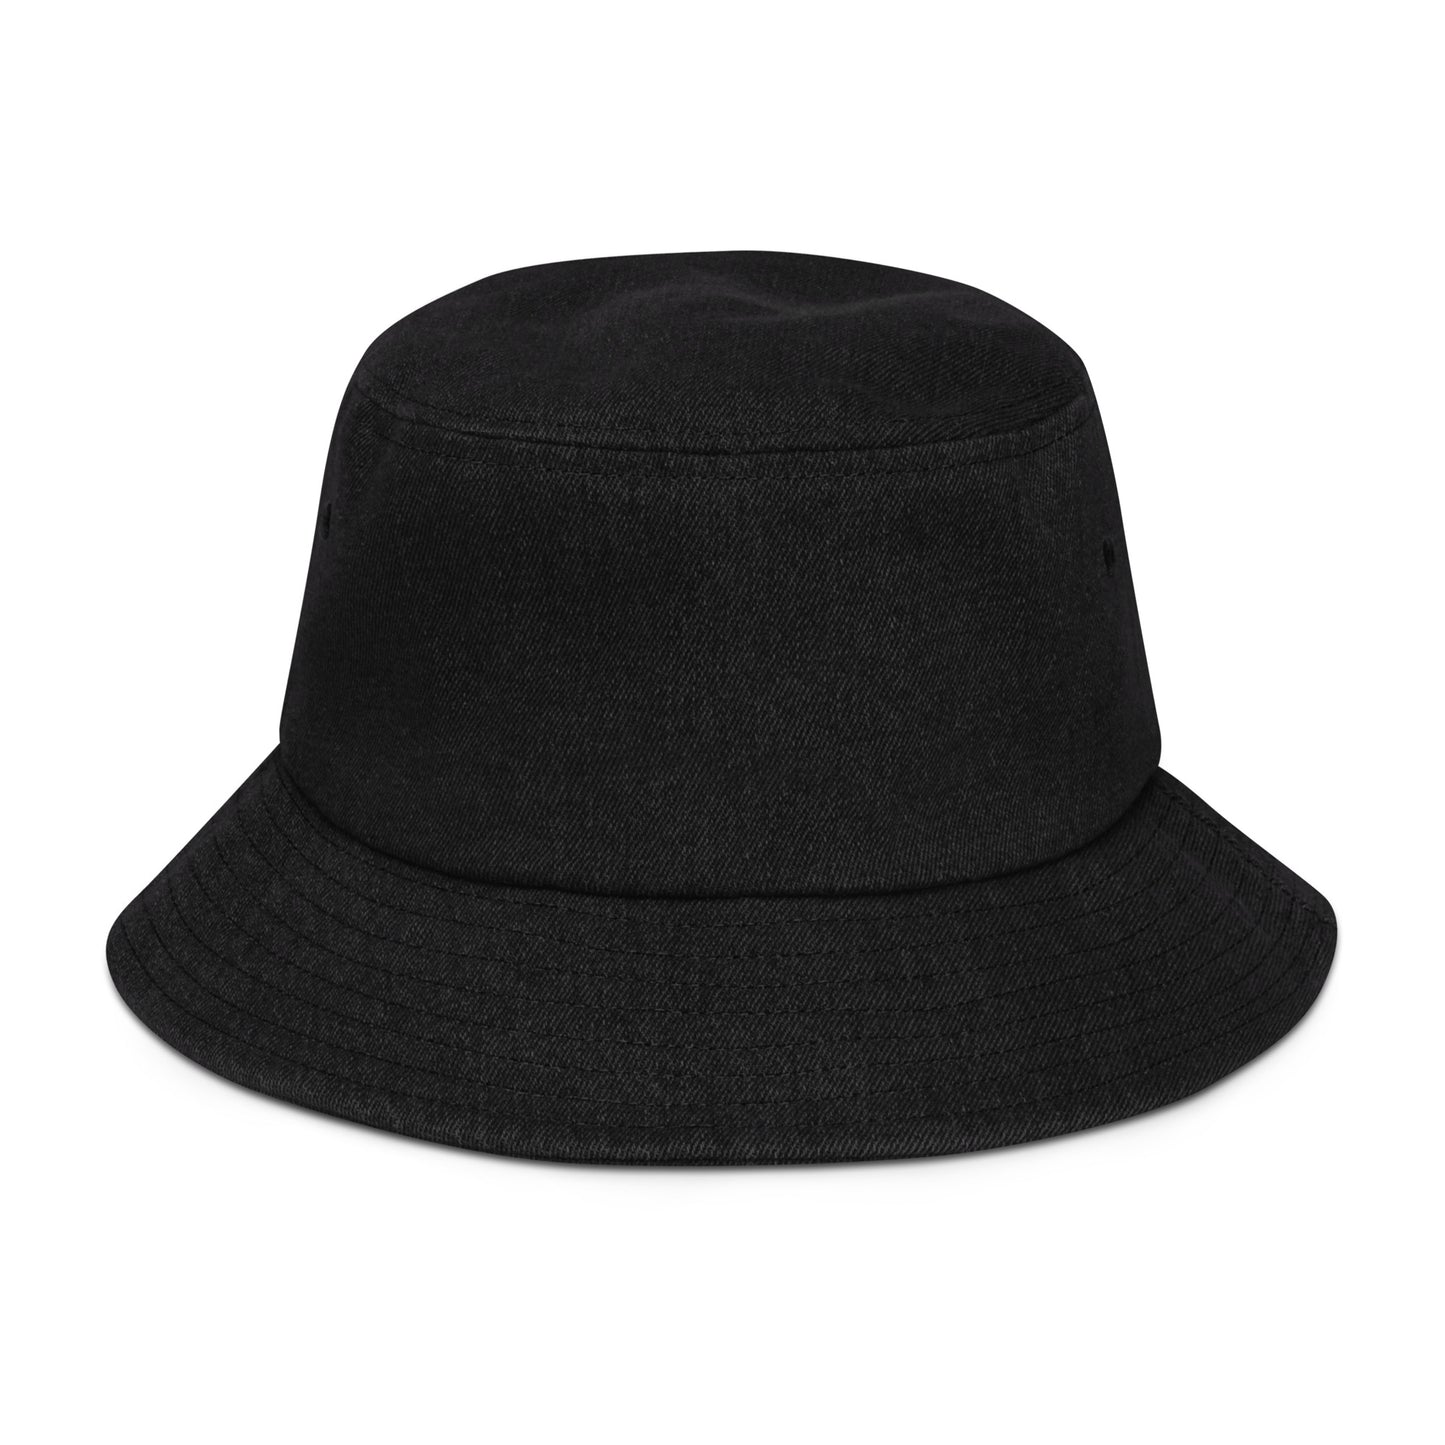 Hale Denim bucket hat